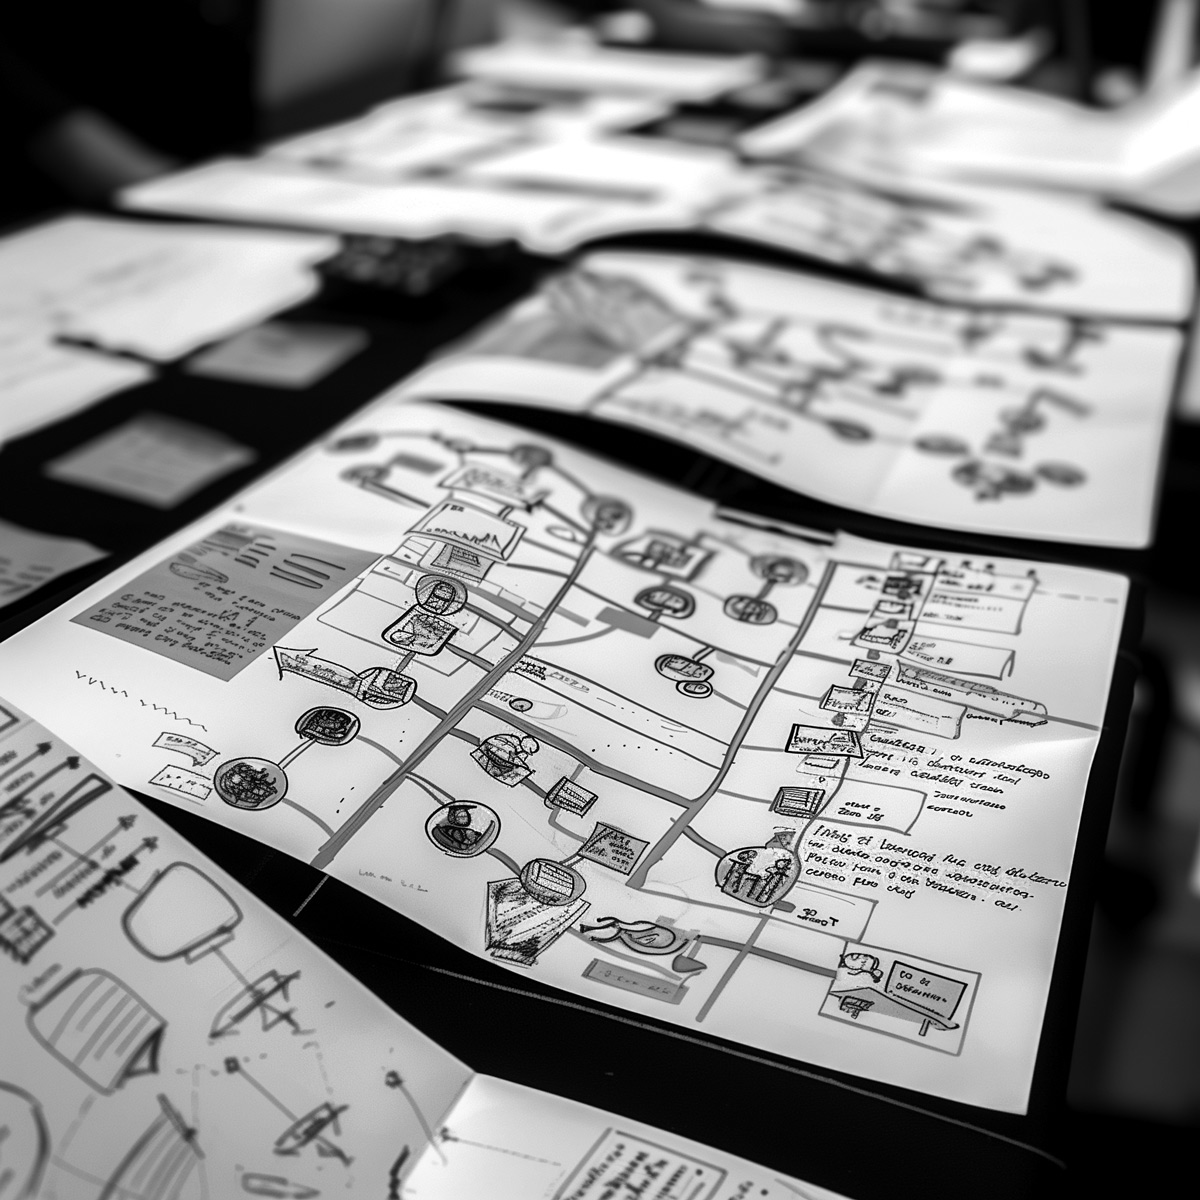 Vereinswebsite - Schwarzweißfoto von einem Arbeitsplatz mit Skizzenblättern im Sketchnotestil